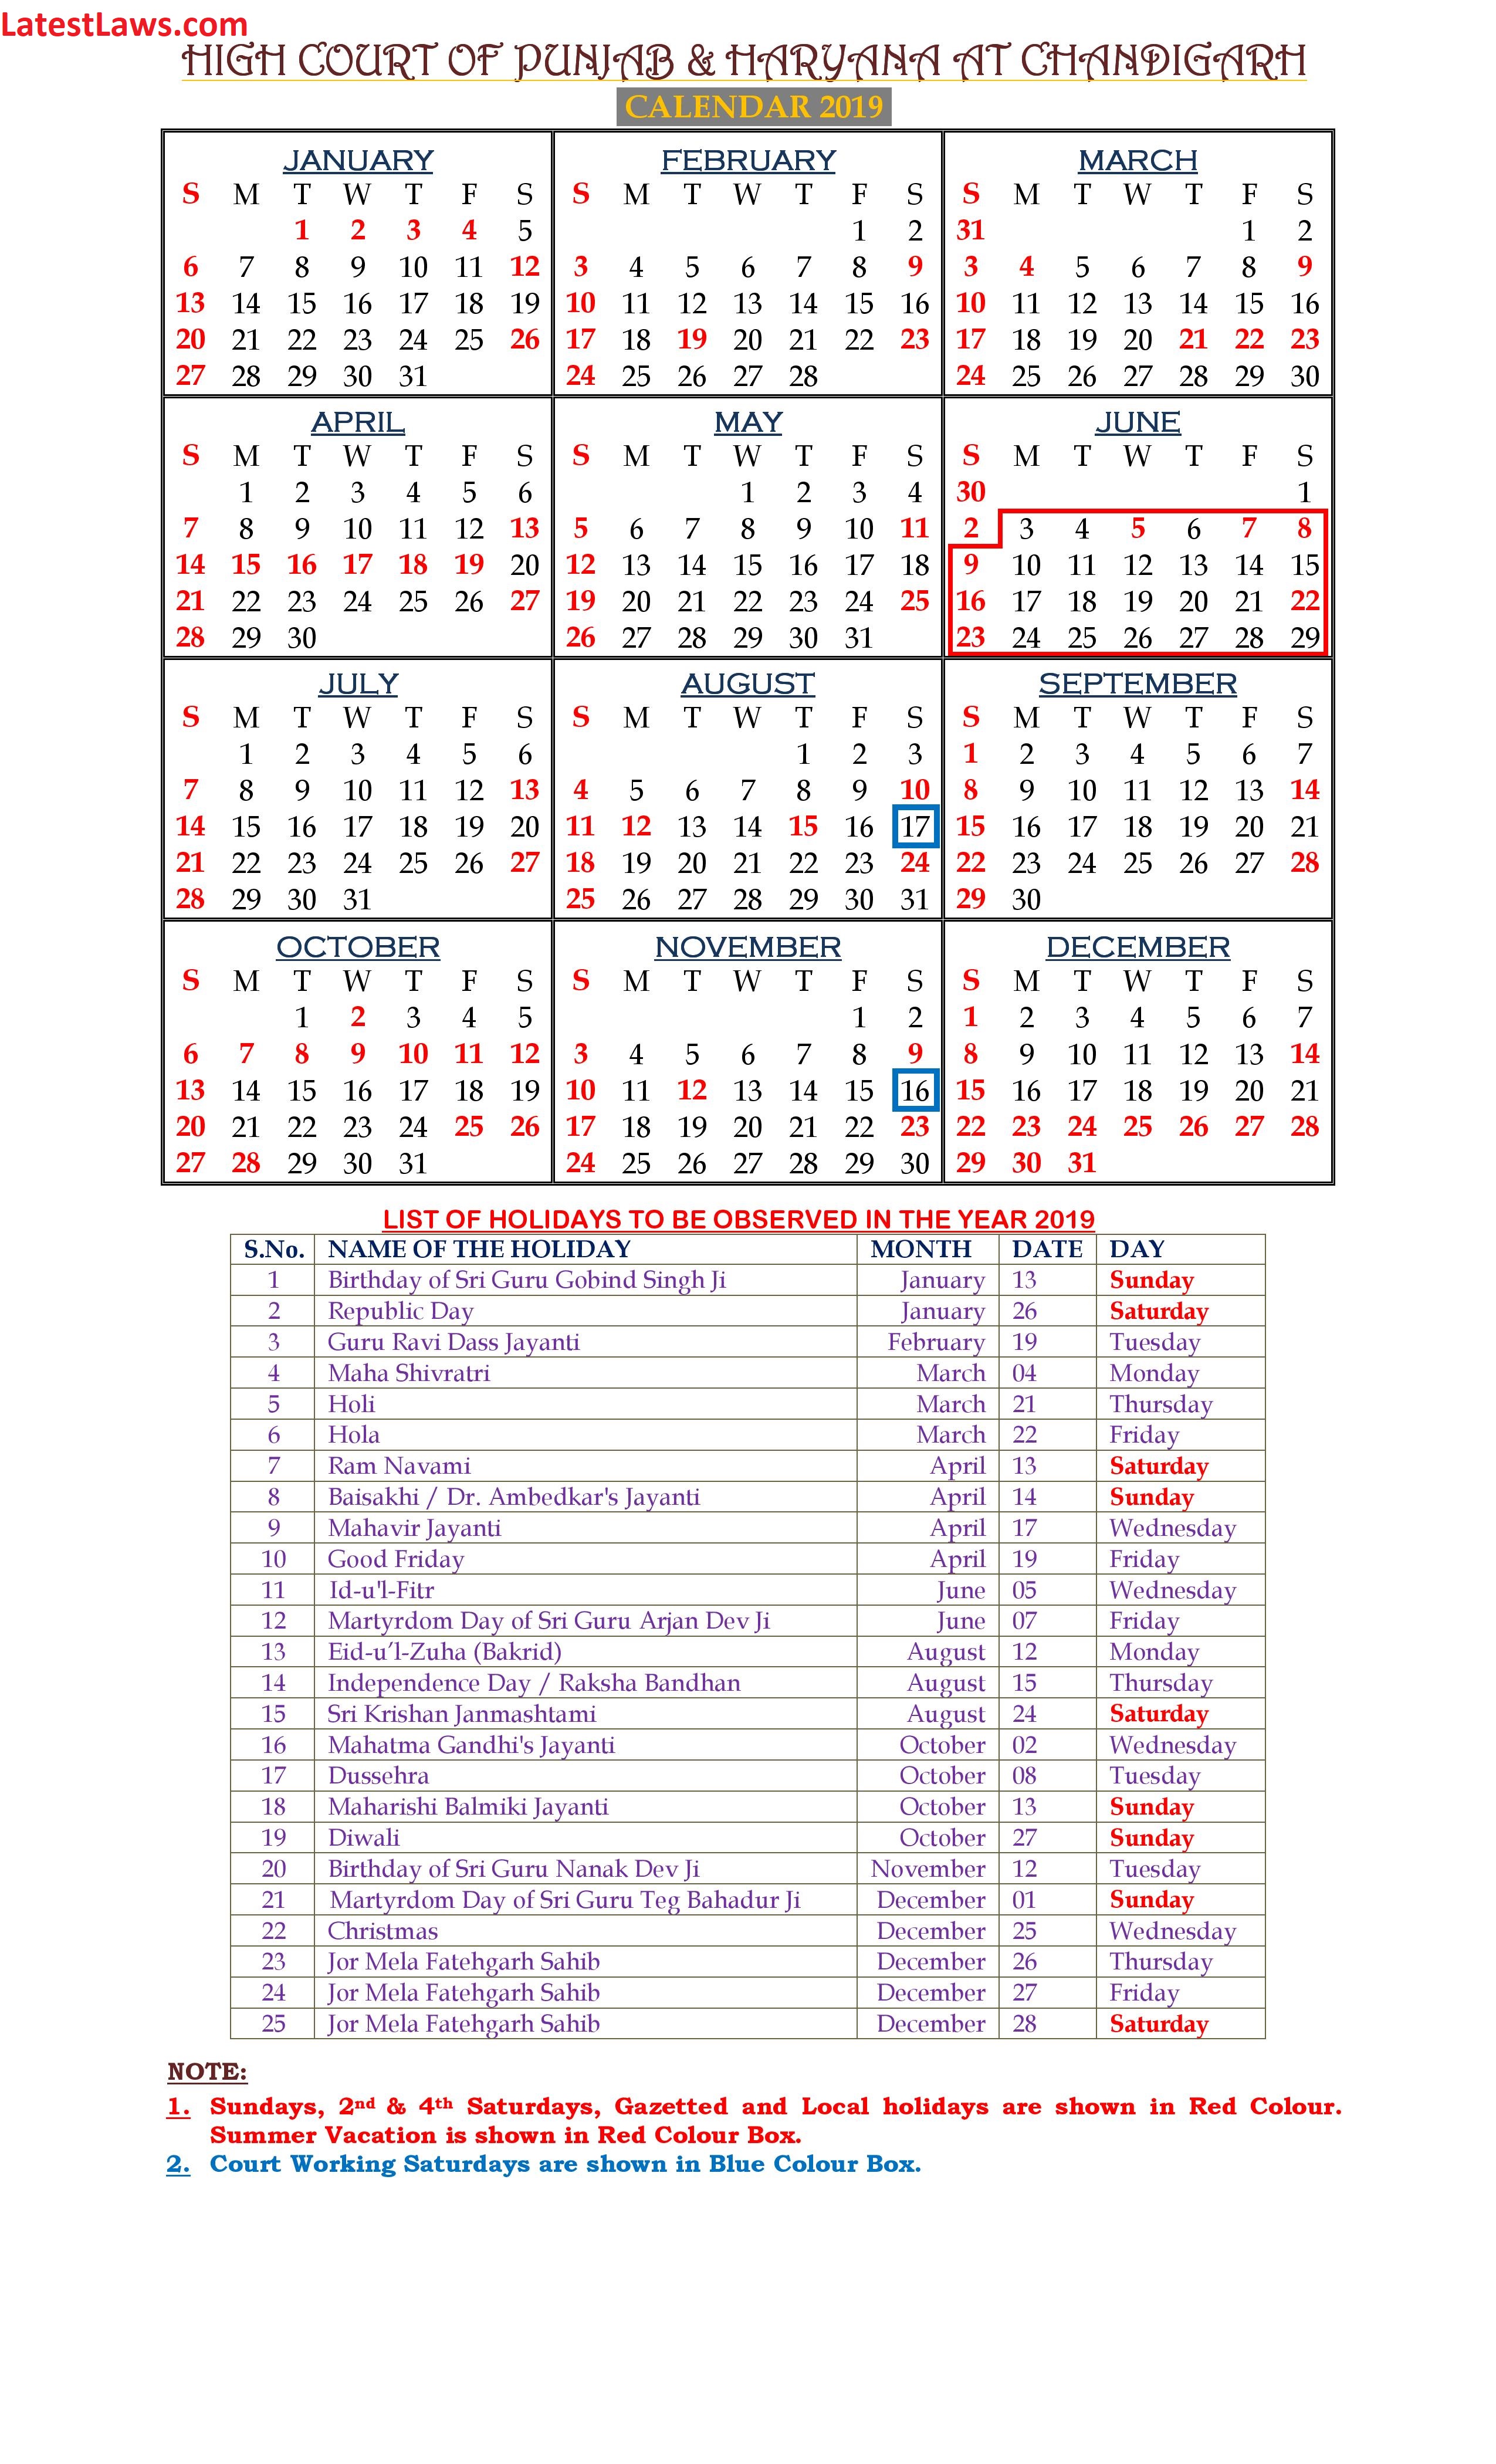 Haryana and Punjab High Court Calendar 2019